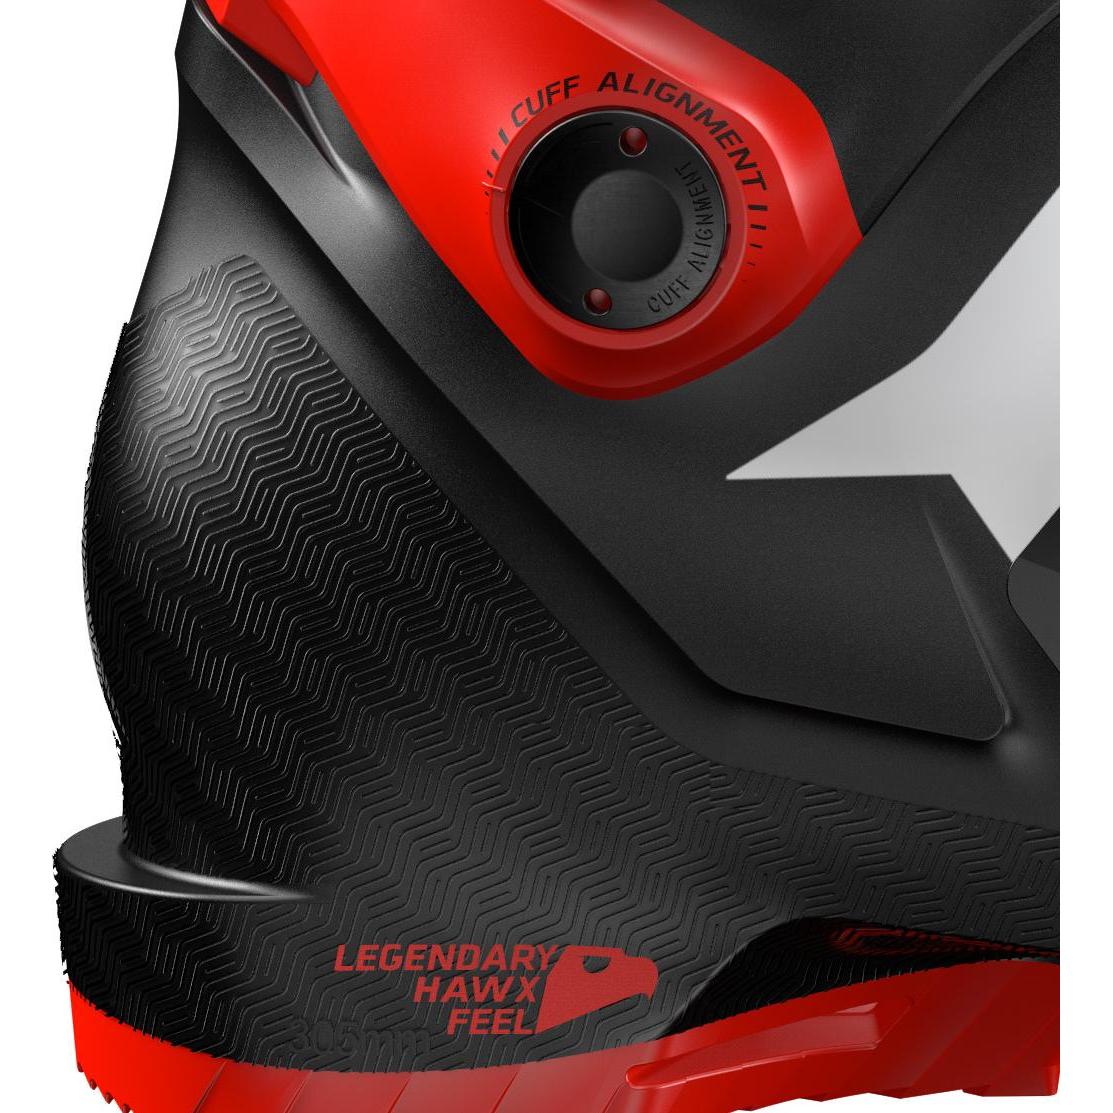 Горнолыжные ботинки ATOMIC HAWX PRIME 100 Black/Red